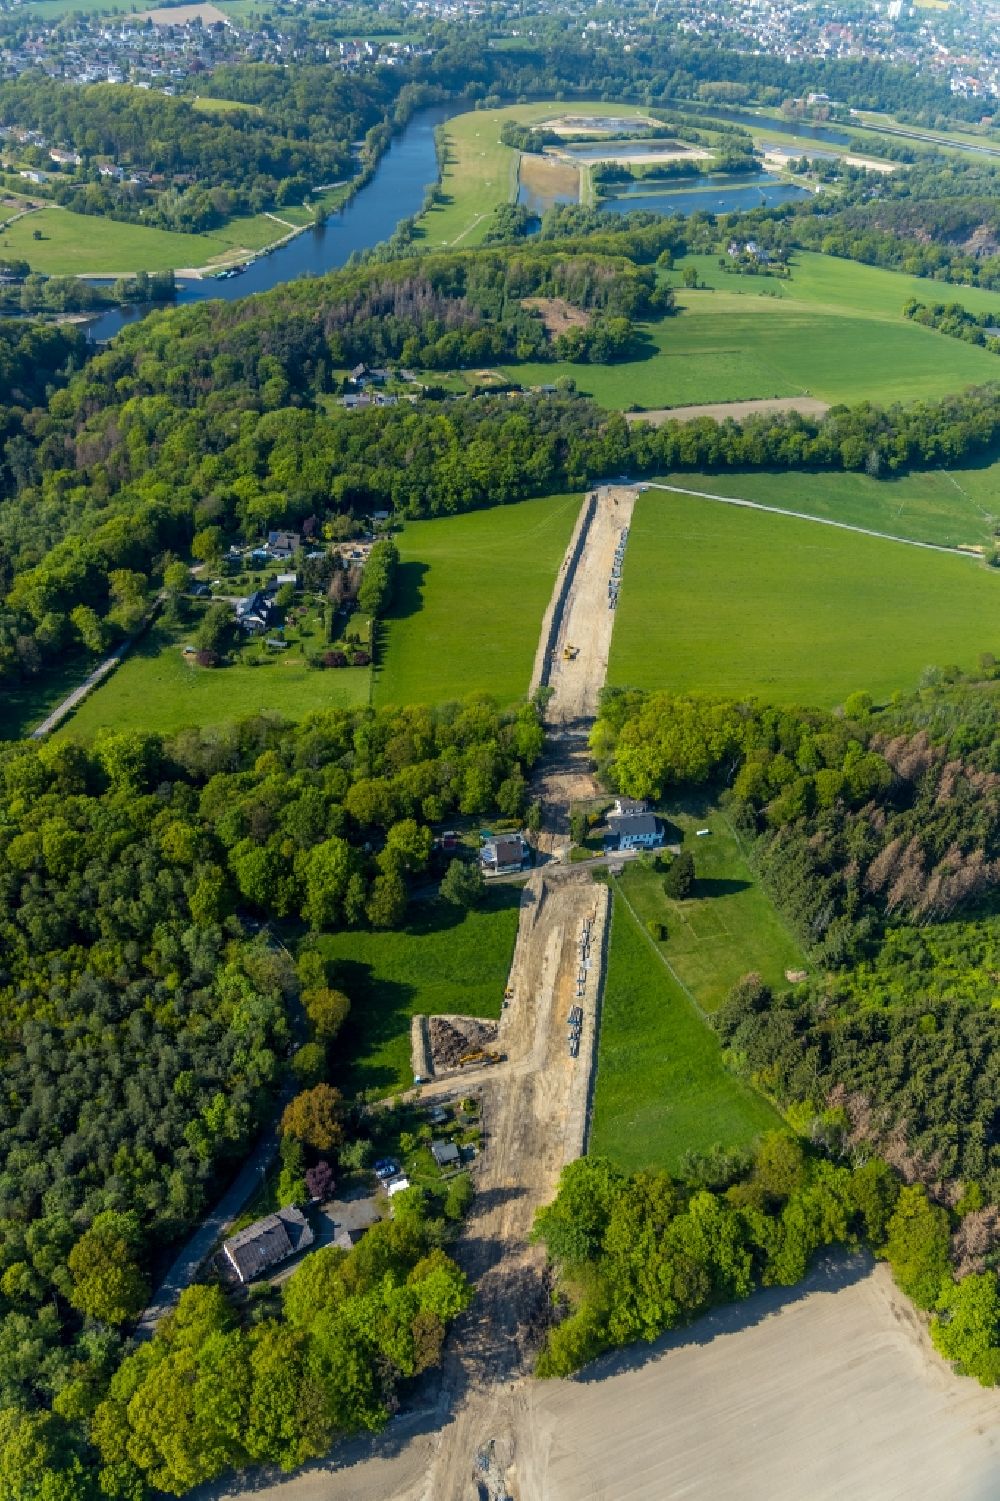 Luftbild Witten - Baustelle zur Verlegung von Leitungs- Rohren der Wasserleitung entlang im Ortsteil Bommern in Witten im Bundesland Nordrhein-Westfalen, Deutschland